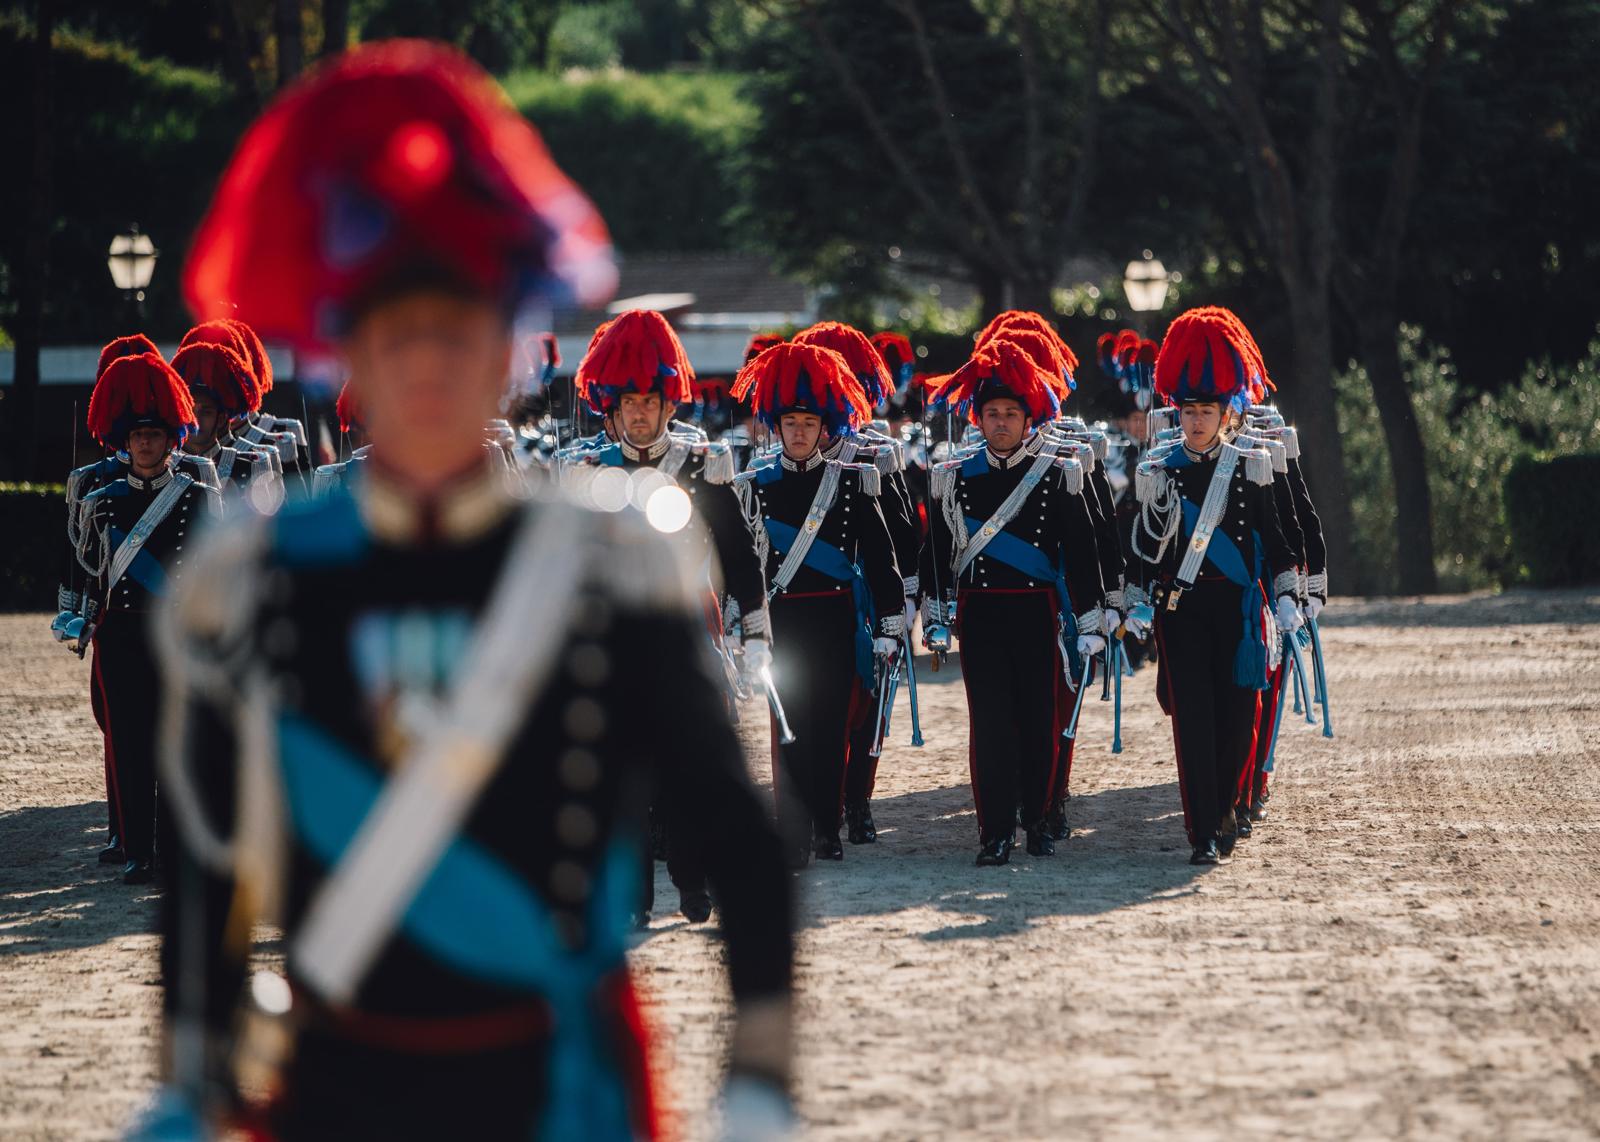  ‣ adn24 celebrazione del 210° anniversario della fondazione dell’arma dei carabinieri